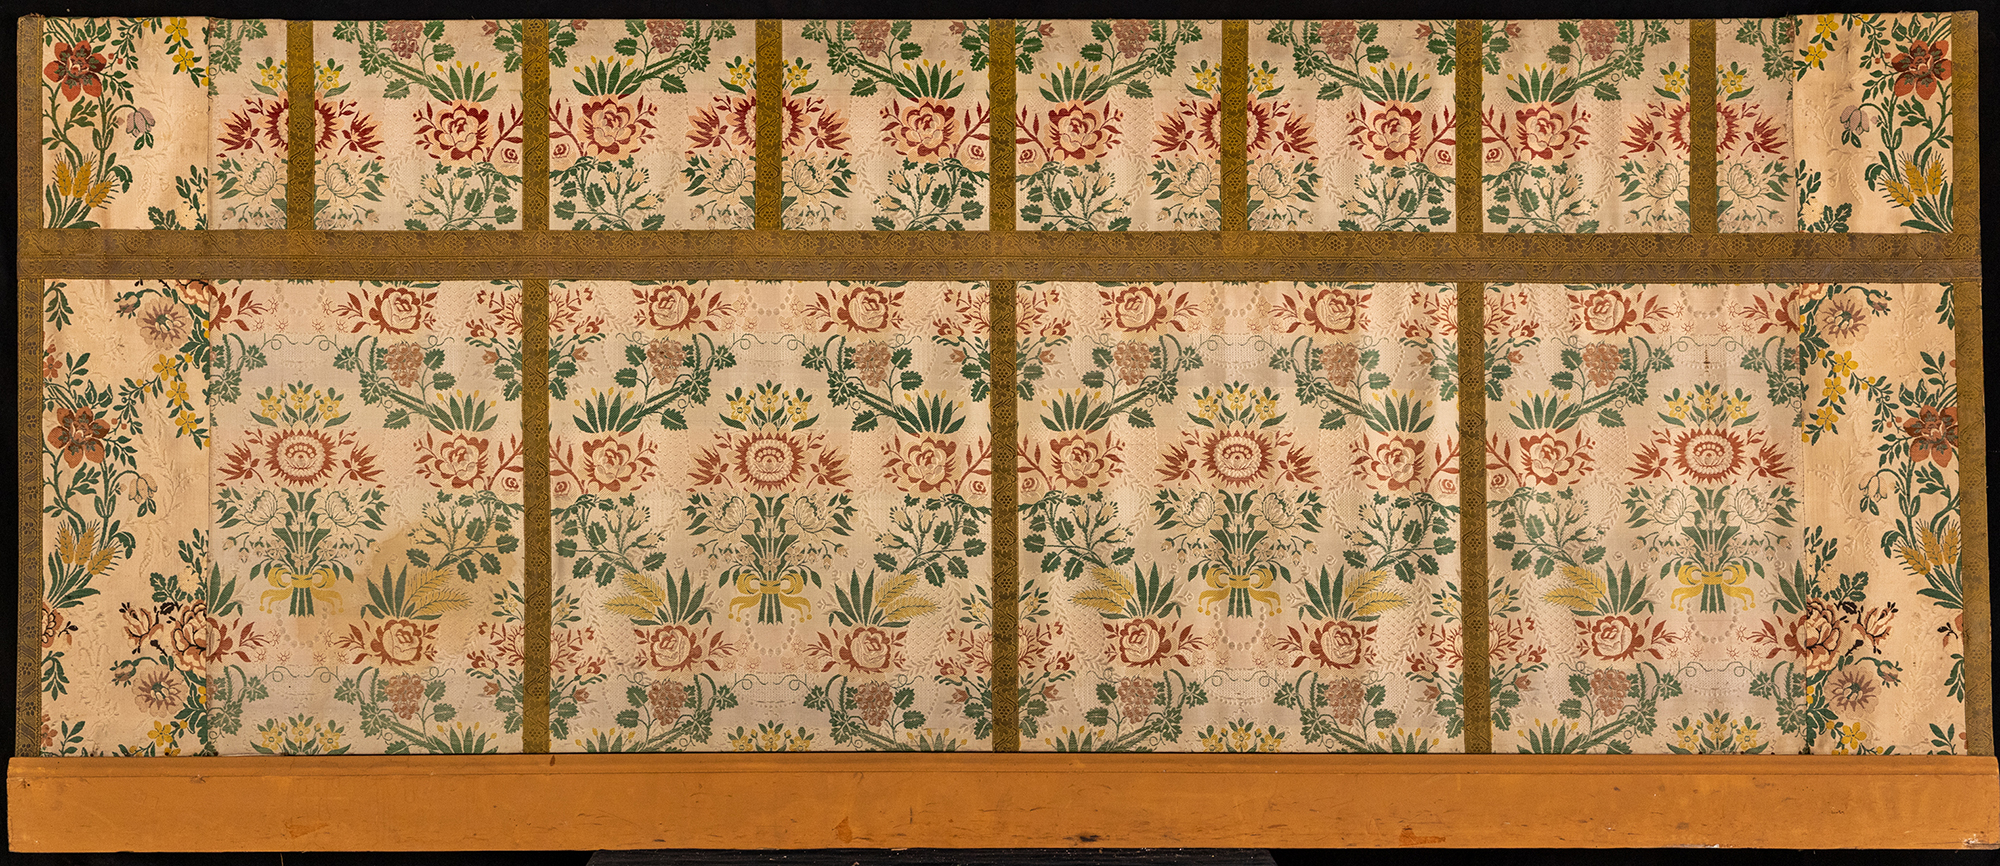 motivi decorativi floreali (paliotto, opera isolata) - manifattura italiana (fine/ inizio secc. XIX/ XX)